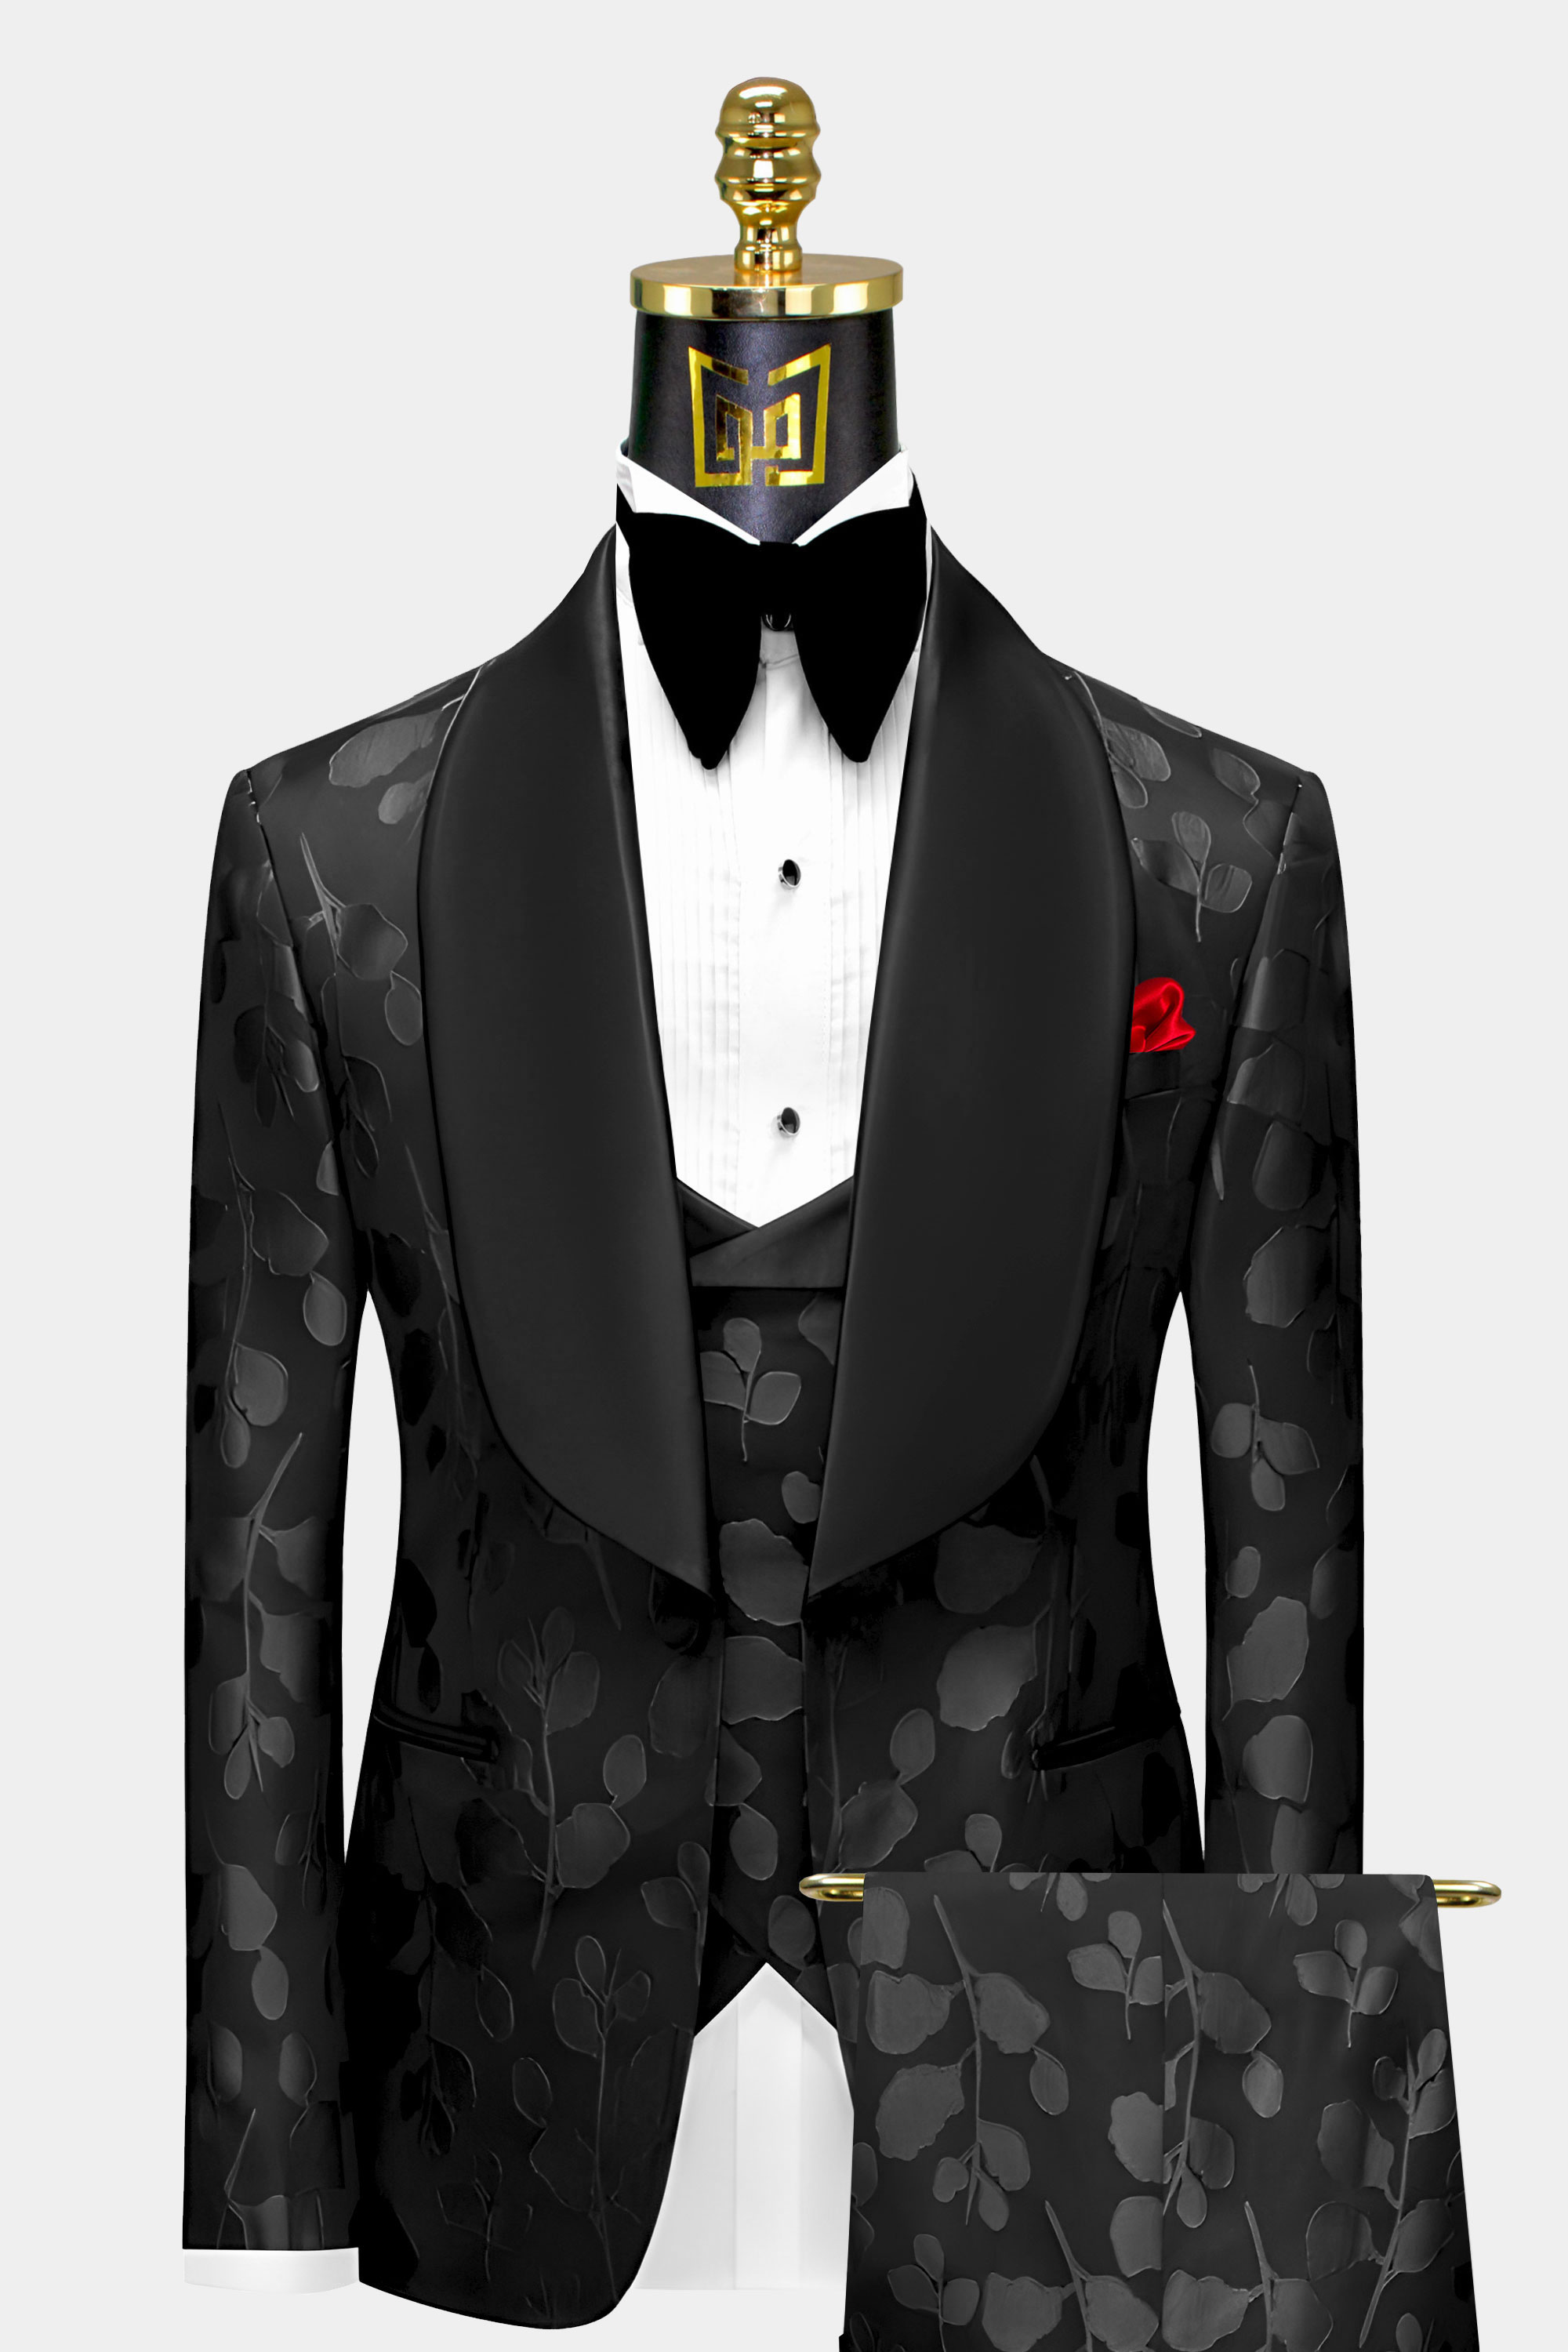 https://www.gentlemansguru.com/wp-content/uploads/2022/06/Black-on-Black-Tuxedo-Groom-Wedding-Prom-Suit-For-Men-from-Gentlemansguru.com_.jpg